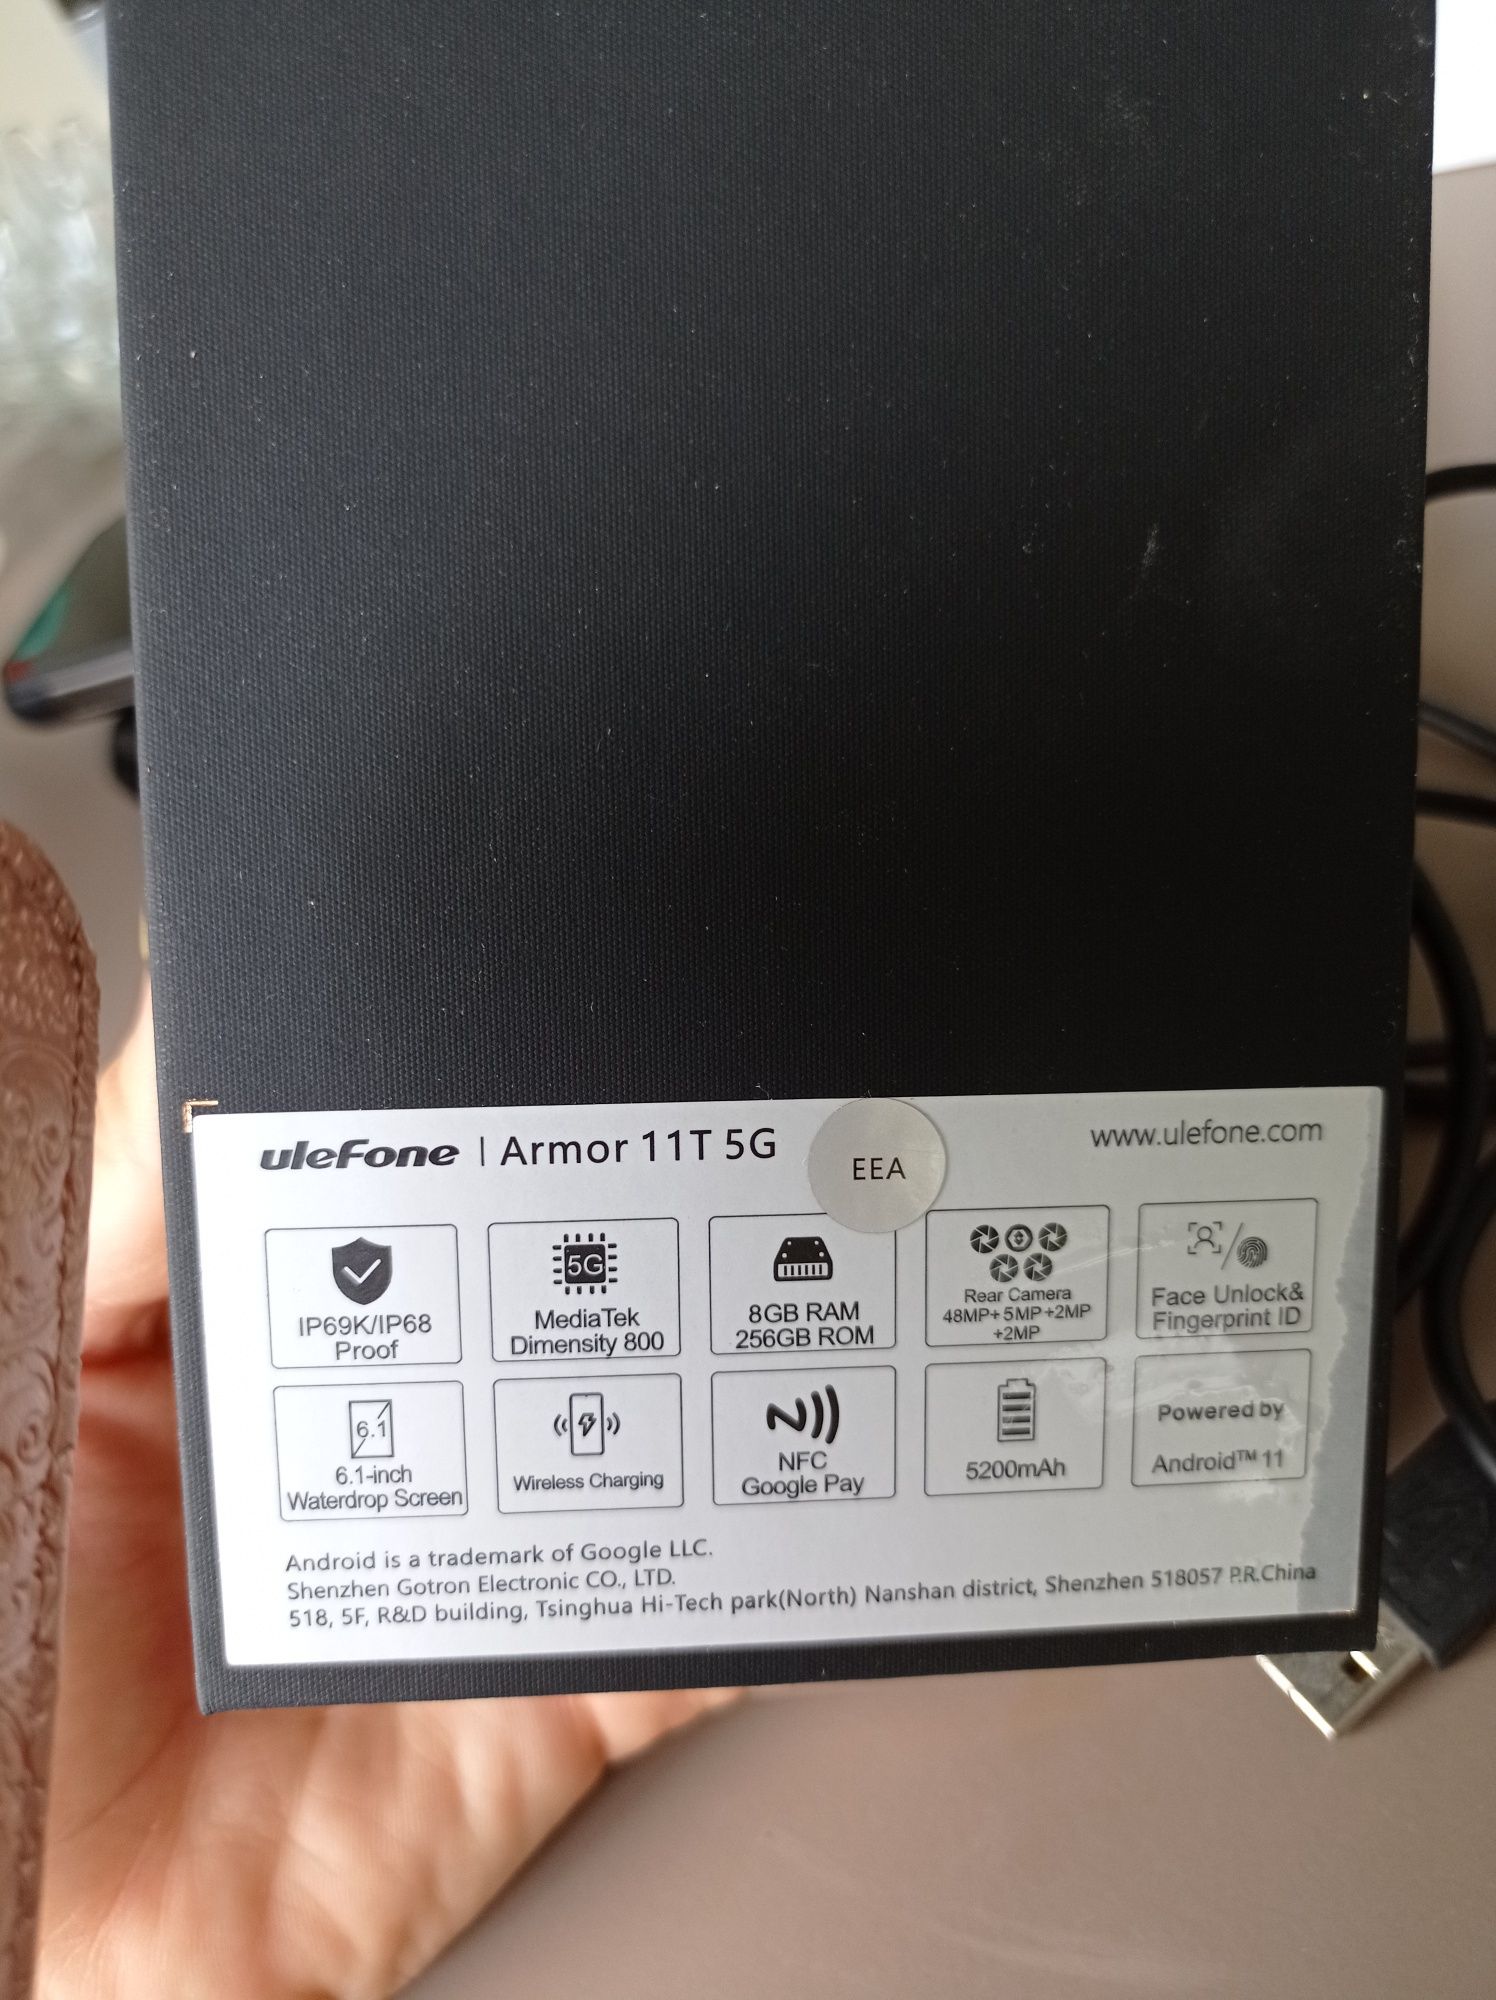 Telefone Armor 11T 5G 8GB/256GB FLIR novo com caixa e fatura